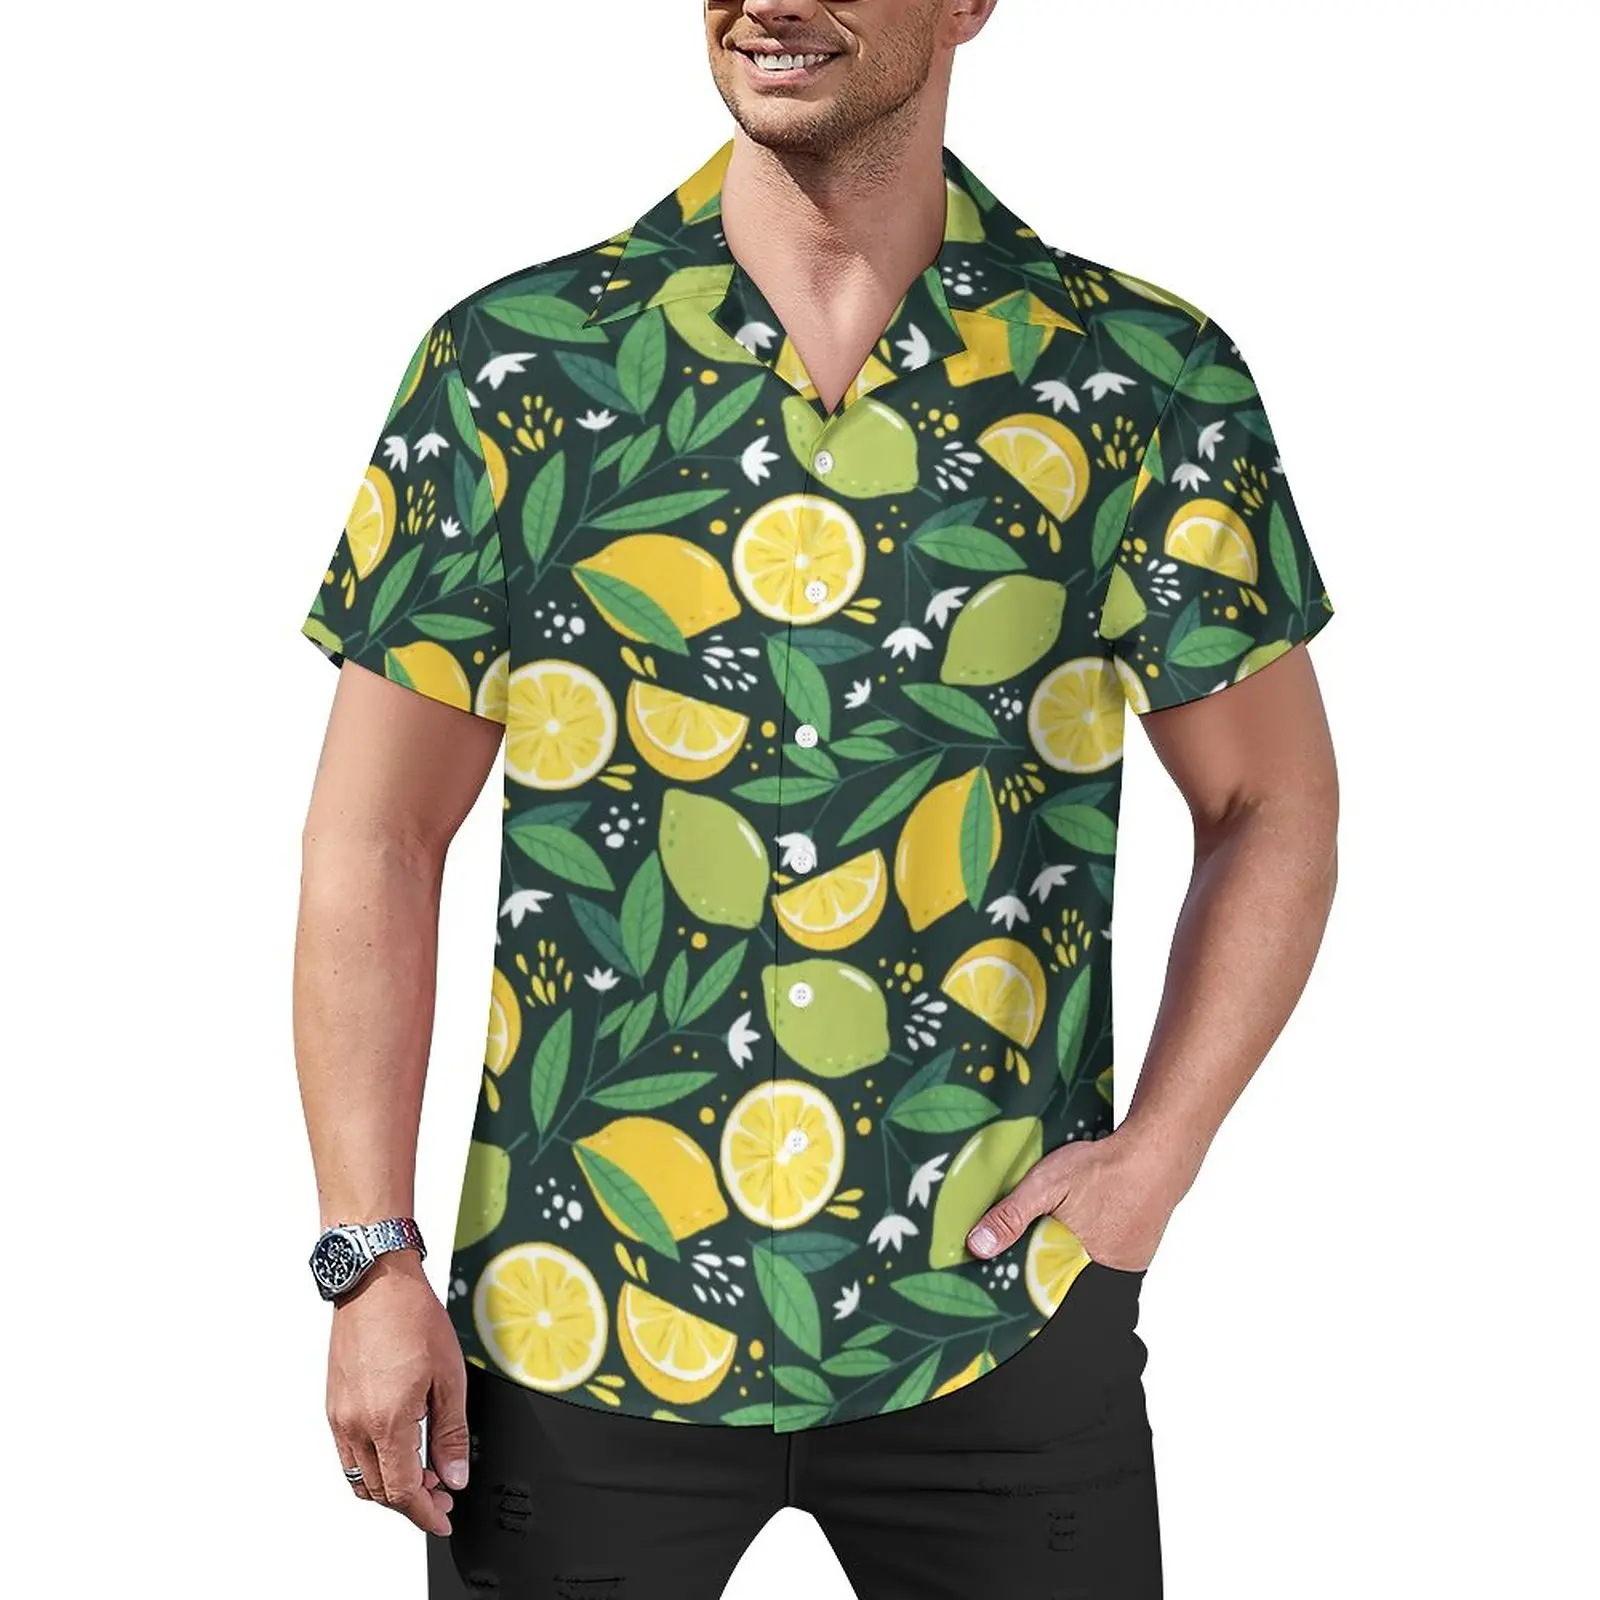 

Рубашка мужская оверсайз с принтом лимона, повседневная желтая блузка с зеленым лаймом, с короткими рукавами, в гавайском стиле, для отпуска, идея для подарка